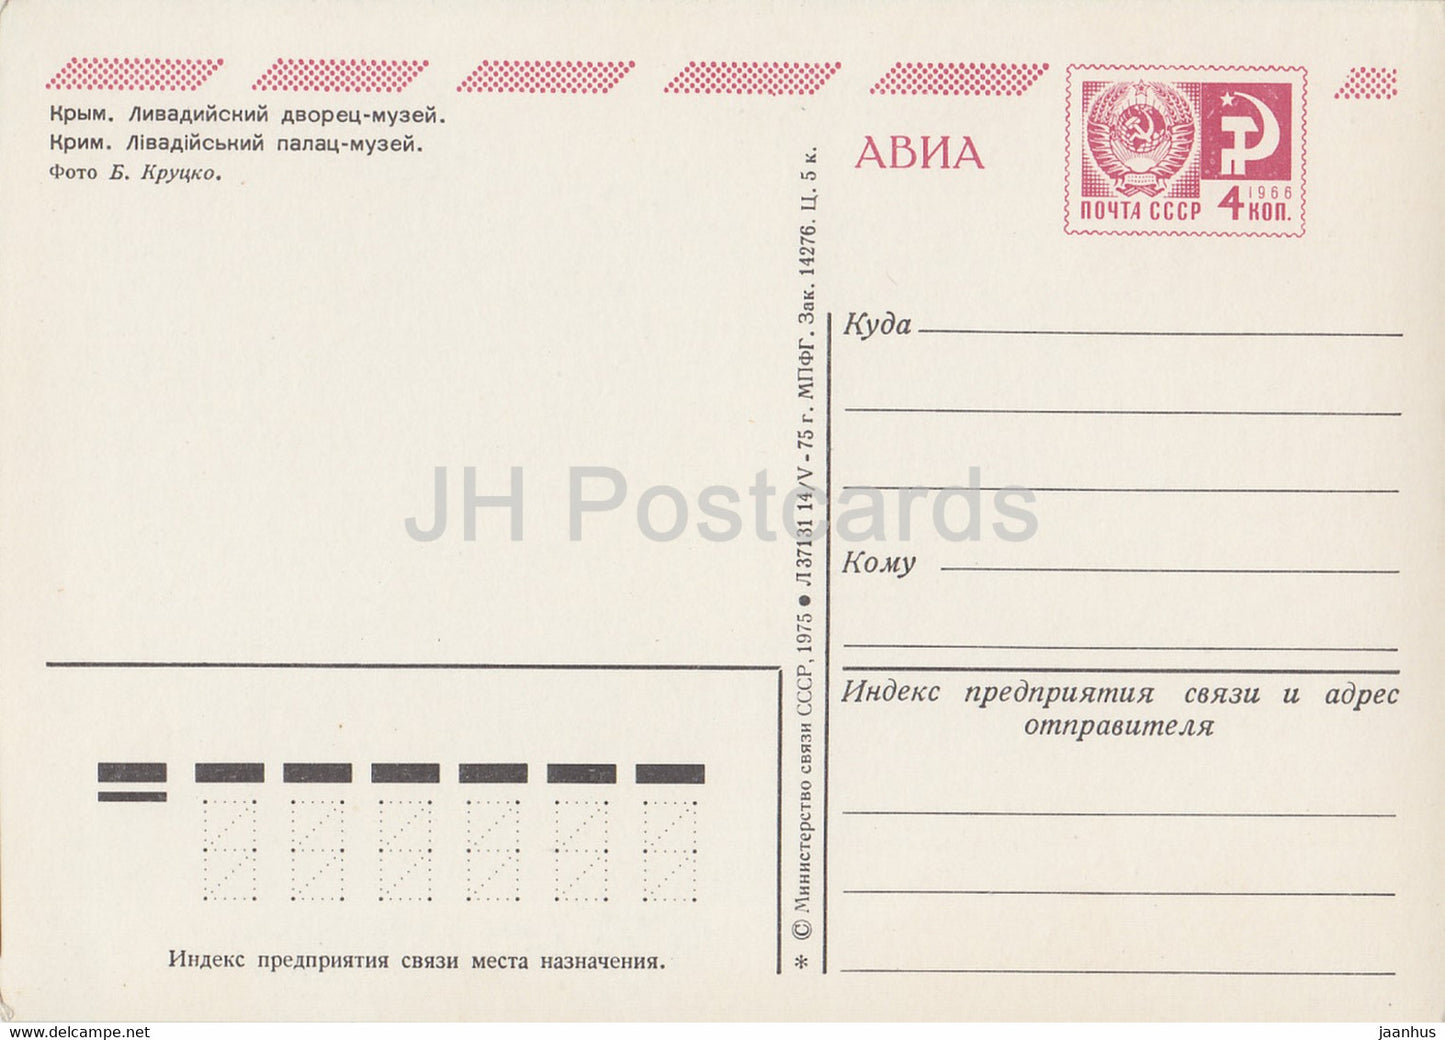 Crimea - Livadia Palace Museum - AVIA - postal stationery - 1975 - Ukraine USSR - unused